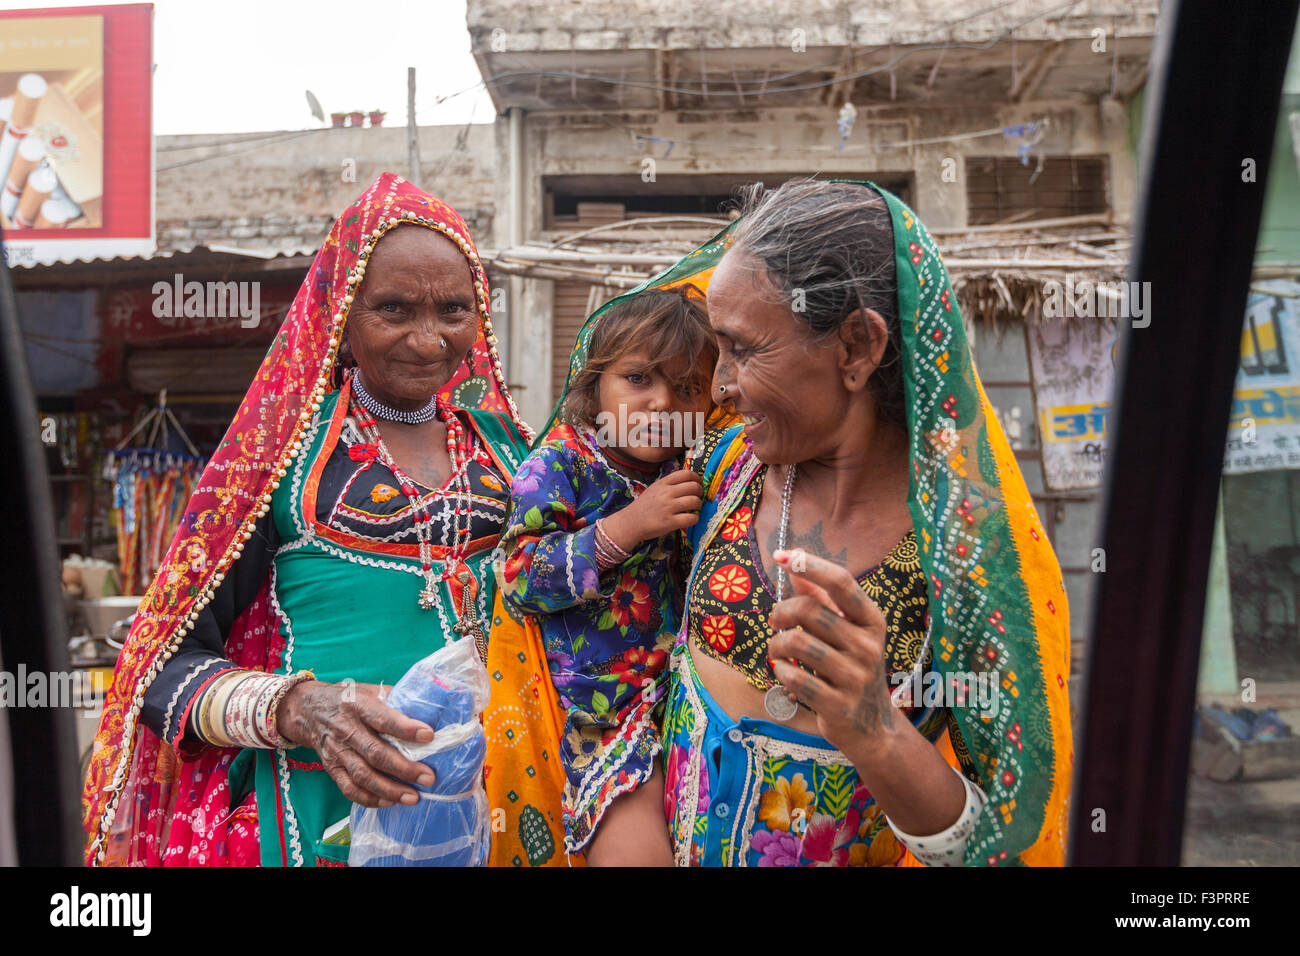 Rajasthani Frauen in traditionellen Kostümen zeigt ein Kind, ein Tourist in ein Taxi. Stockfoto